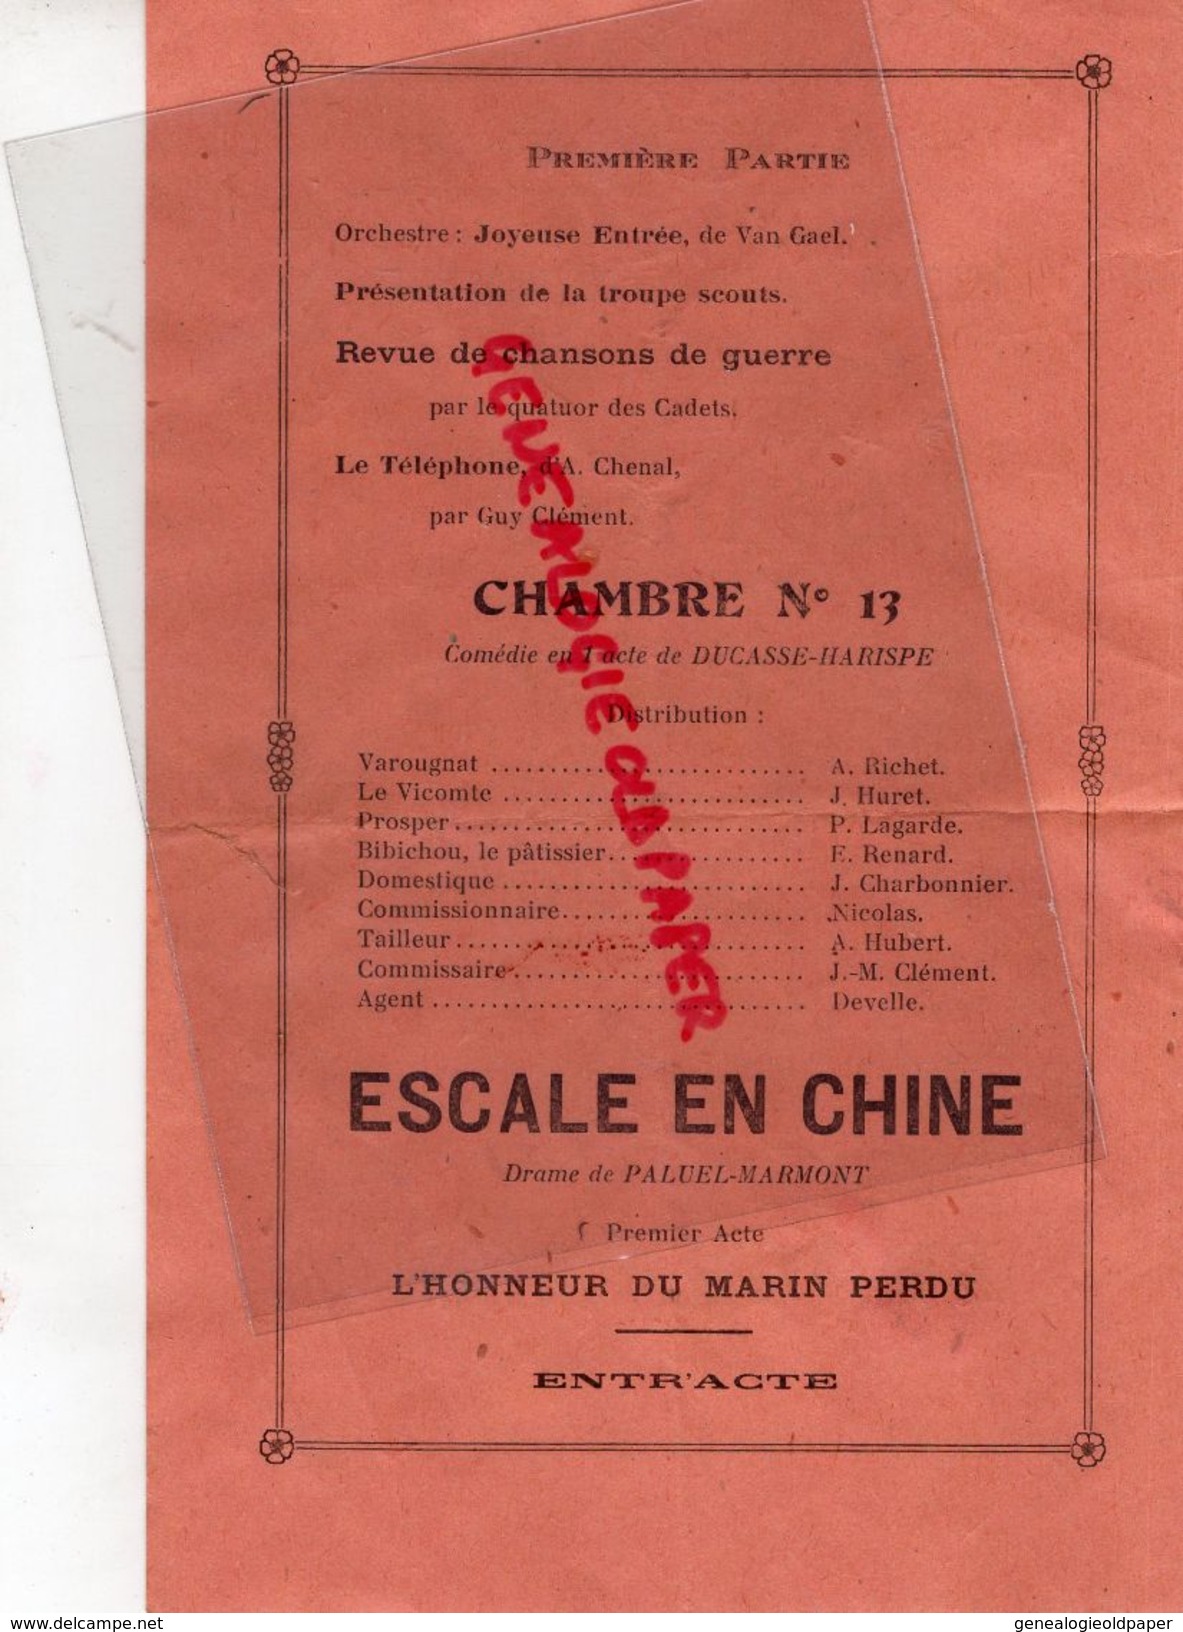 45- LA FERTE SAINT AUBIN- PROGRAMME CADETS DE SOLOGNE-12-12-1945-VARIETES CINEMA-ESCALE EN CHINE-IMPRIMERIE G. DUCREUX - Programma's